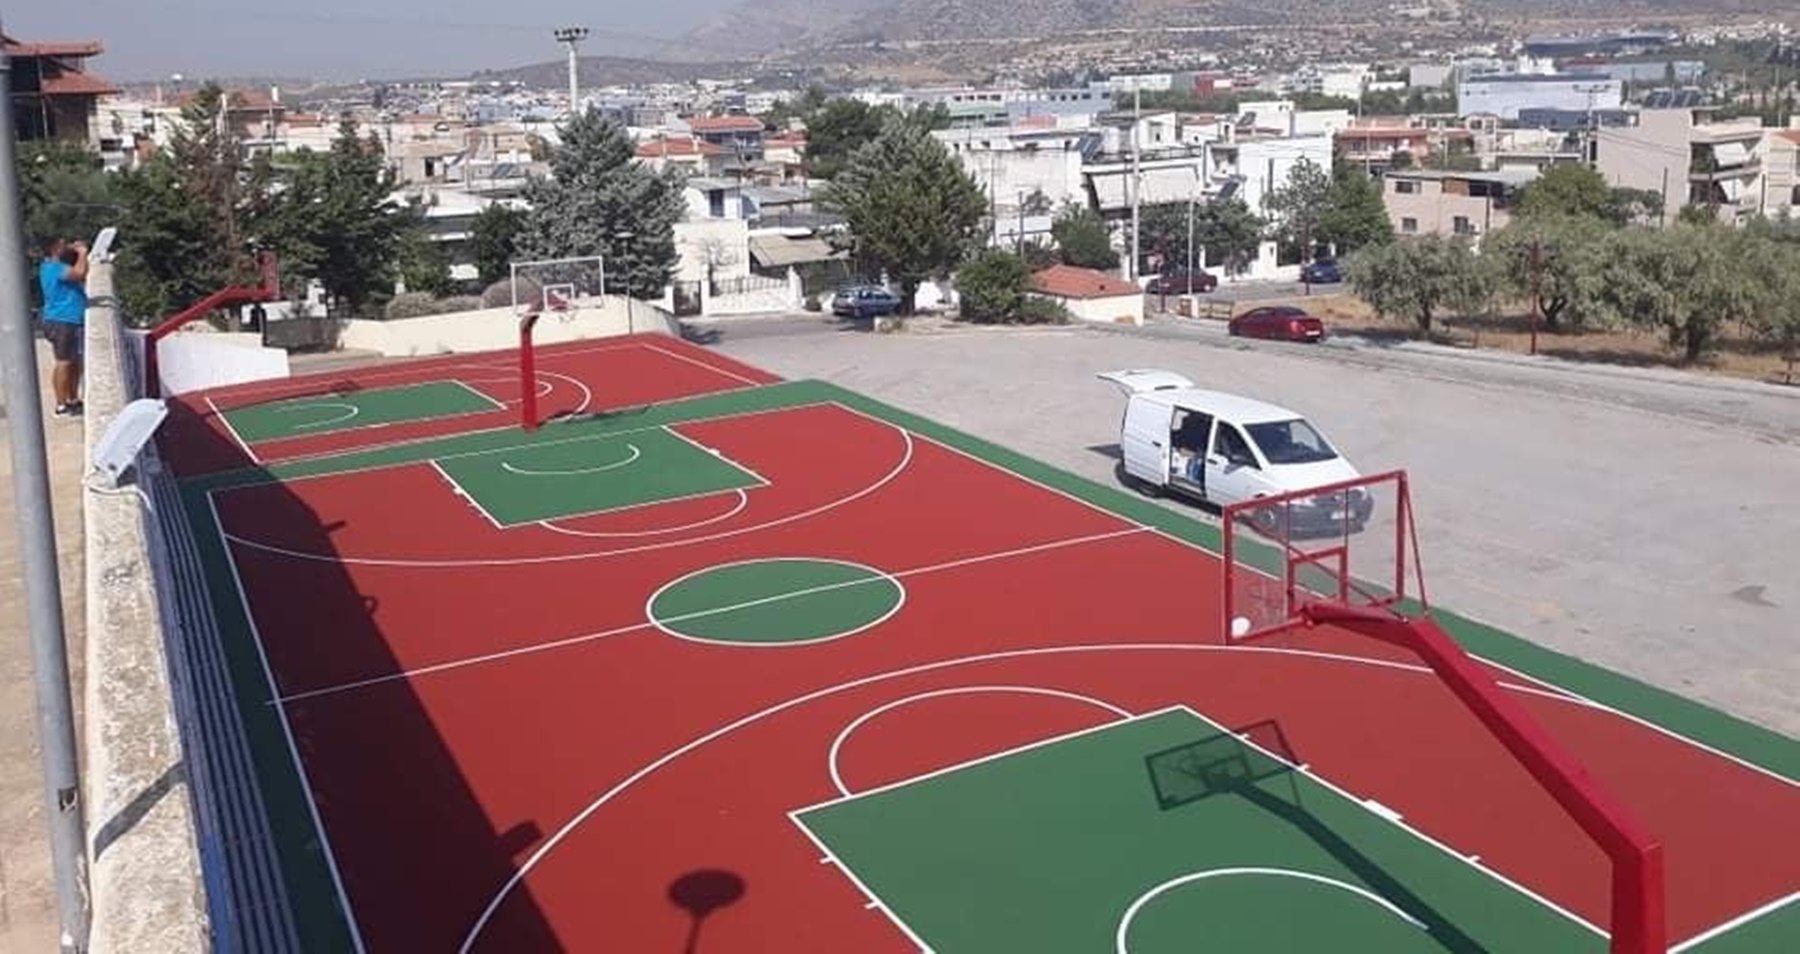 Δήμος Φυλής: Ανακατασκευάστηκαν δύο γήπεδα μπάσκετ